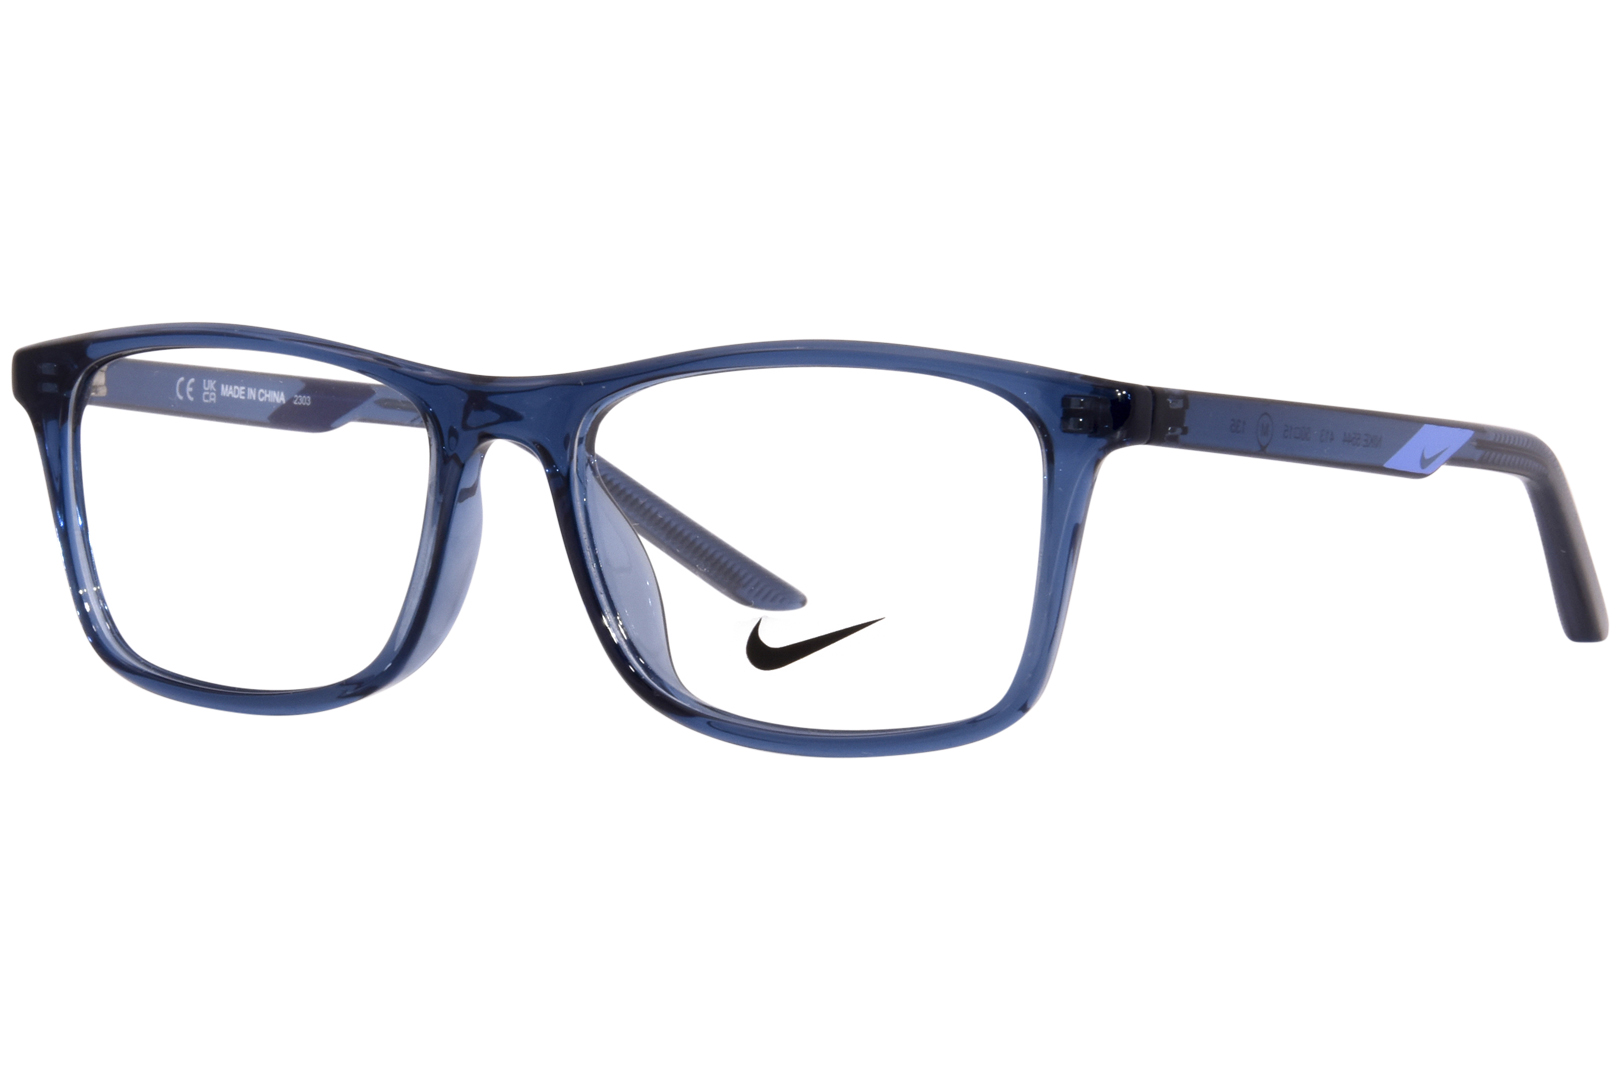  Nike 5544 033 Eyeglasses Matte Youth Anthracite/Atomic